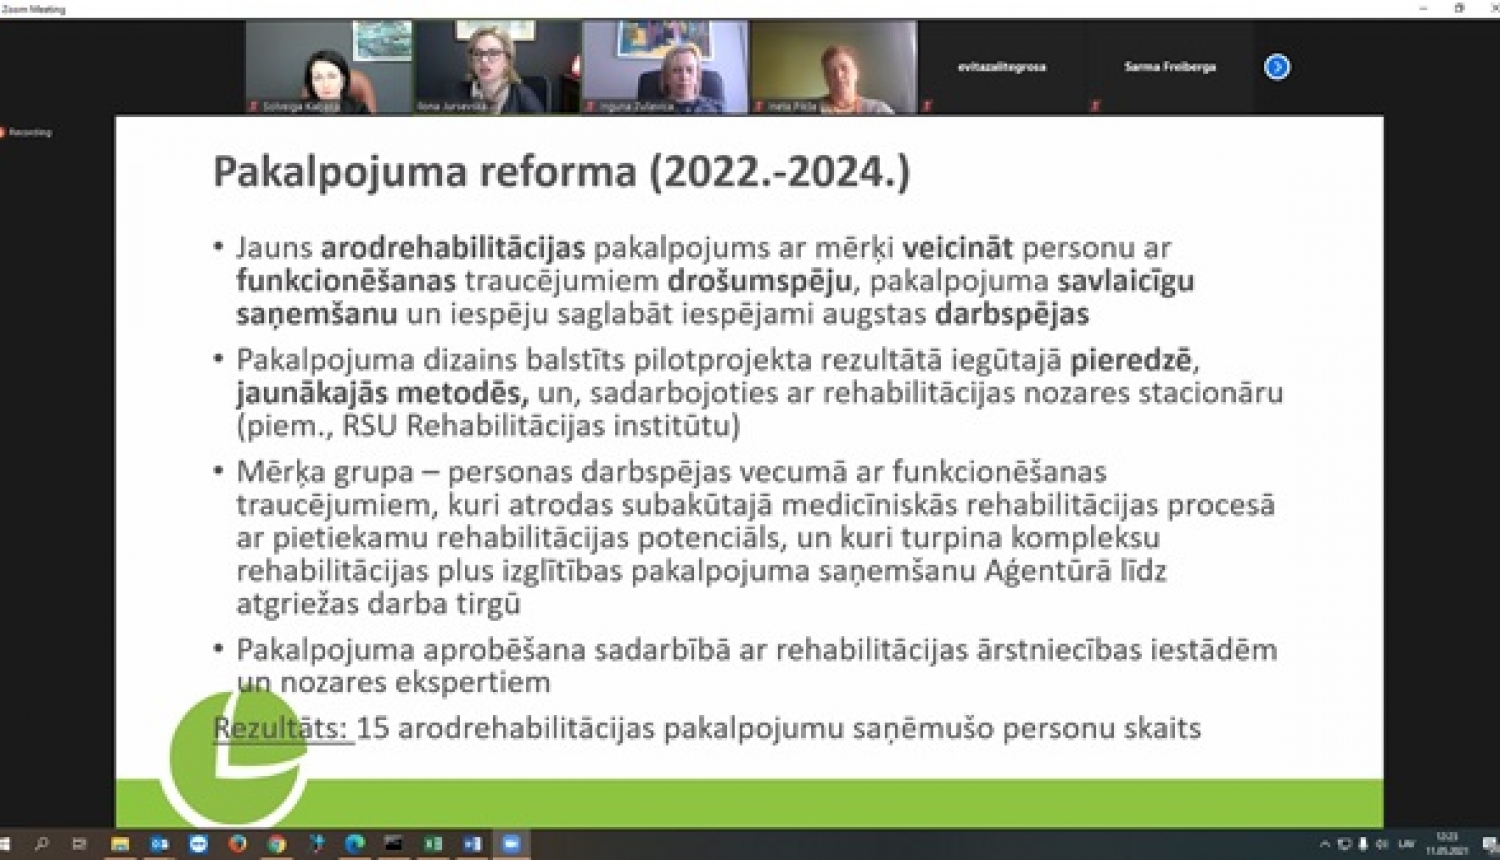 Prezentācijas slaids, kurā aprakstīta pakalpojuma reforma